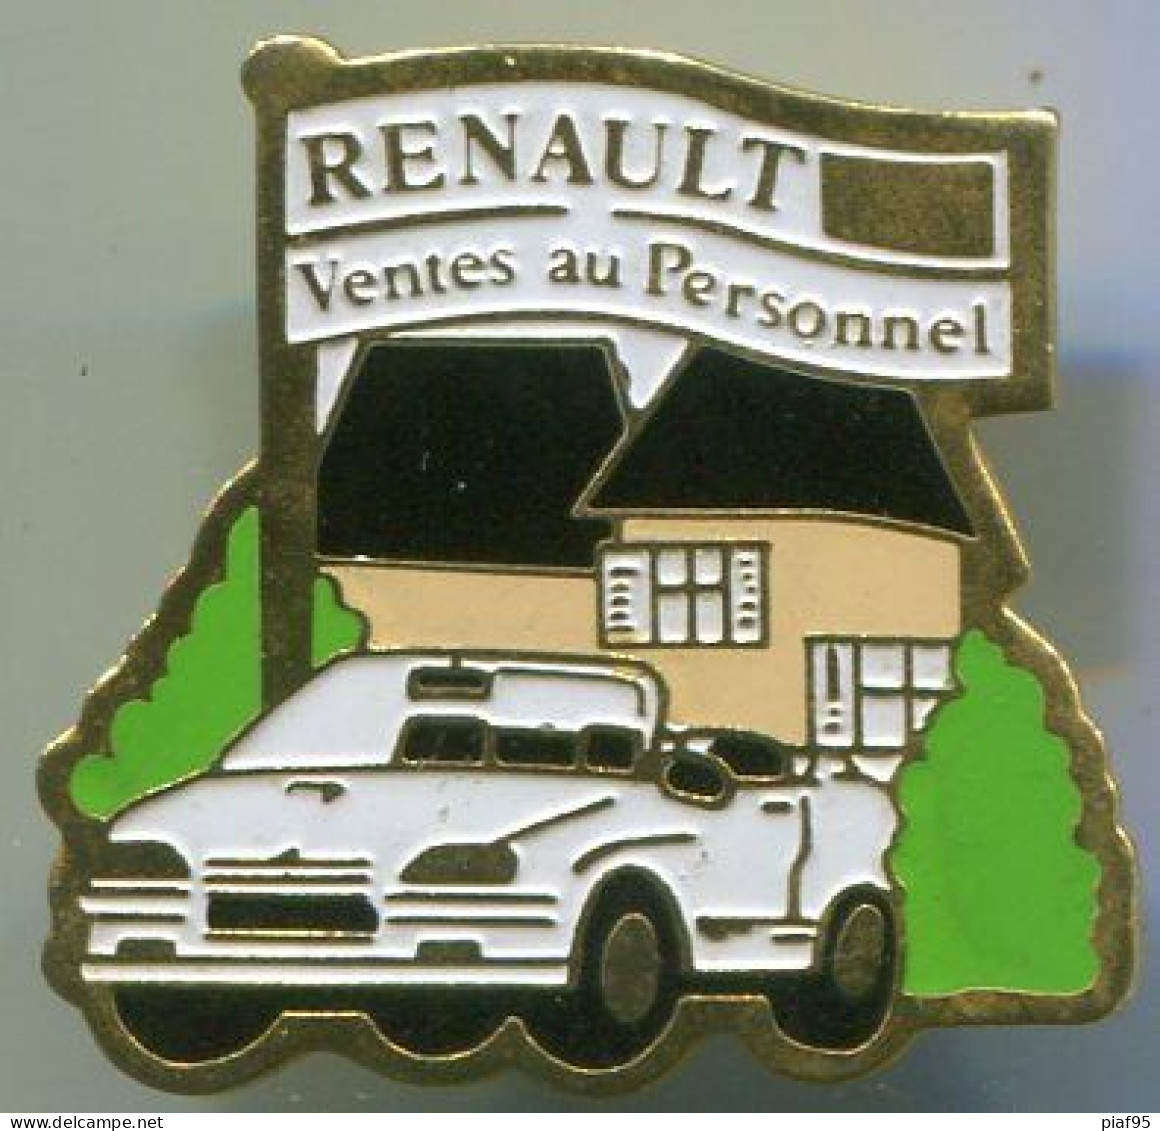 AUTOMOBILE-RENAULT 19 Cabriolet-VENTES AU PERSONNEL - Renault